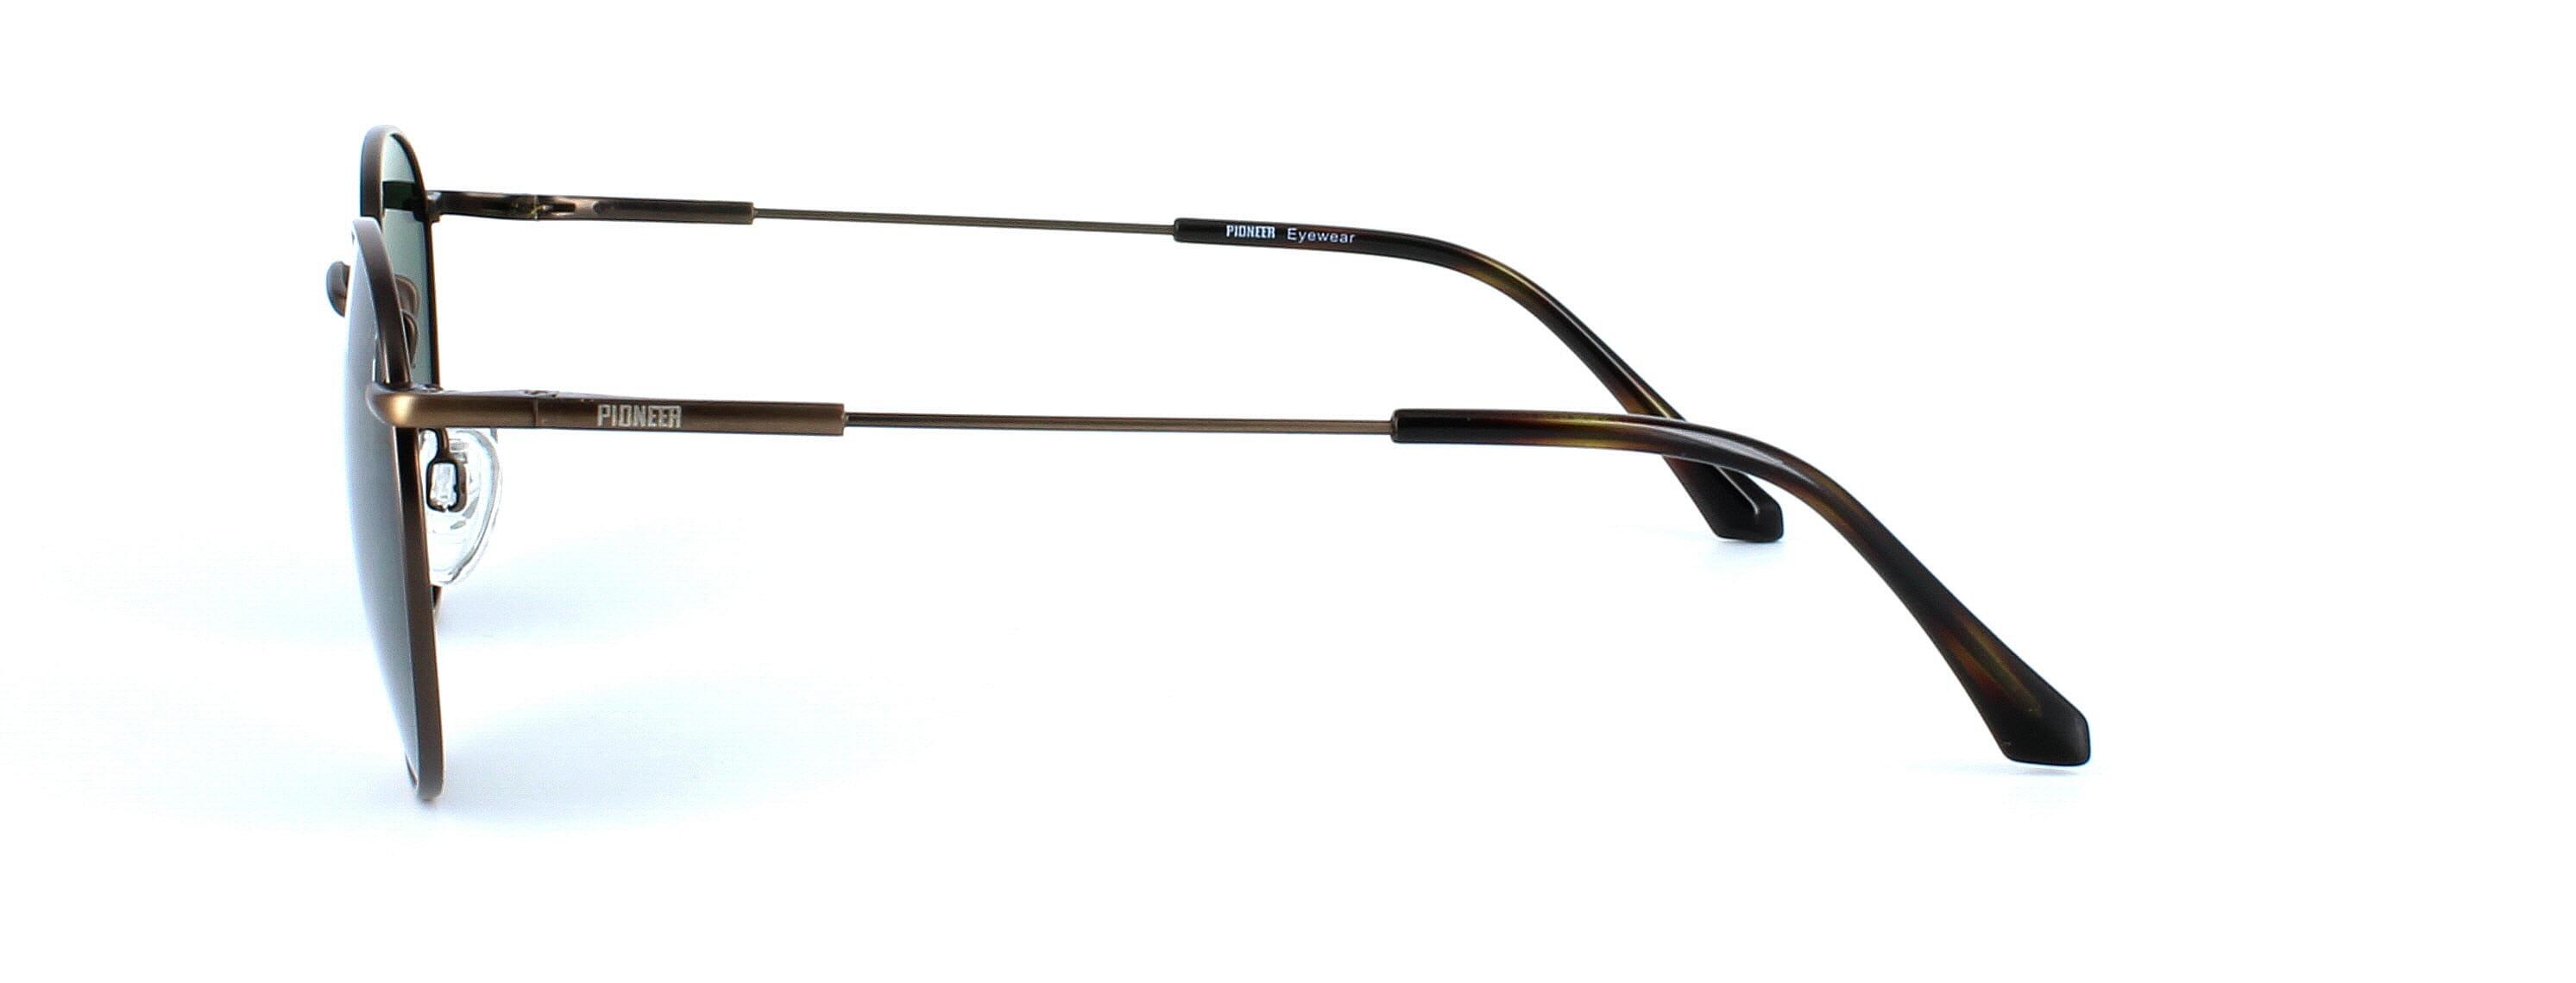 Olmeto - Round shaped pioneer prescription sunglasses - bronze - image view 2